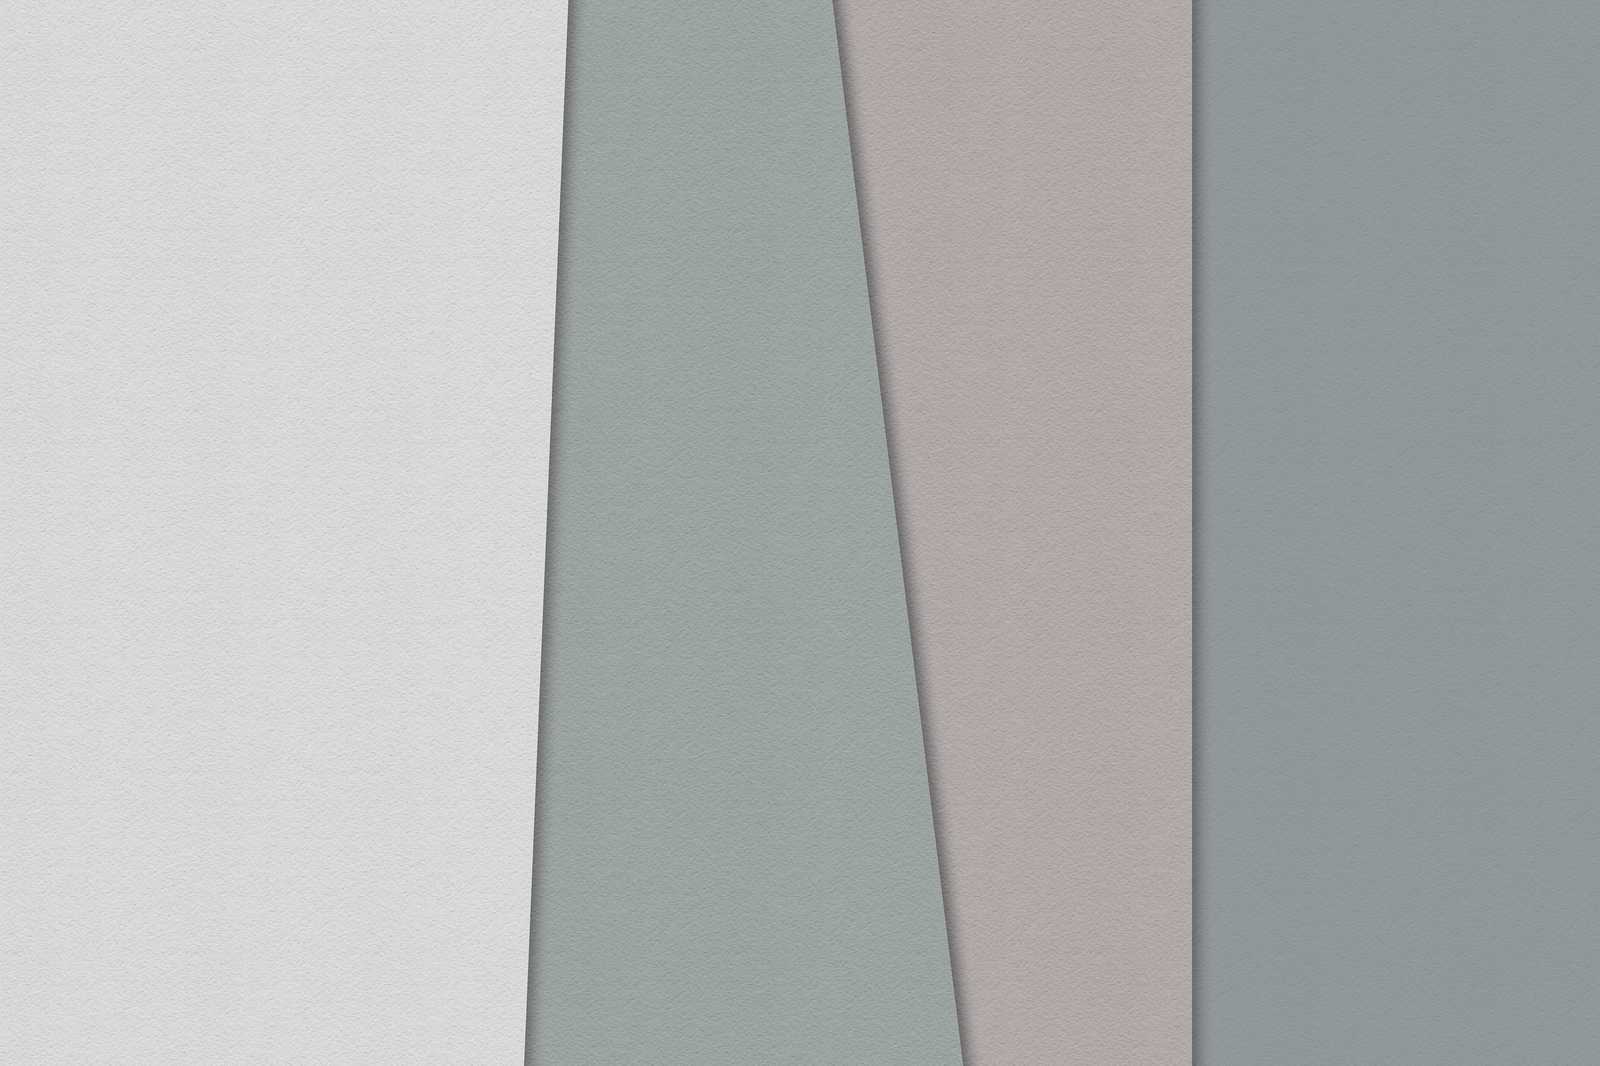             Gelaagd papier 1 - Grafisch canvas schilderij met gekleurde vlakken in handgeschept papier structuur - 0.90 m x 0.60 m
        